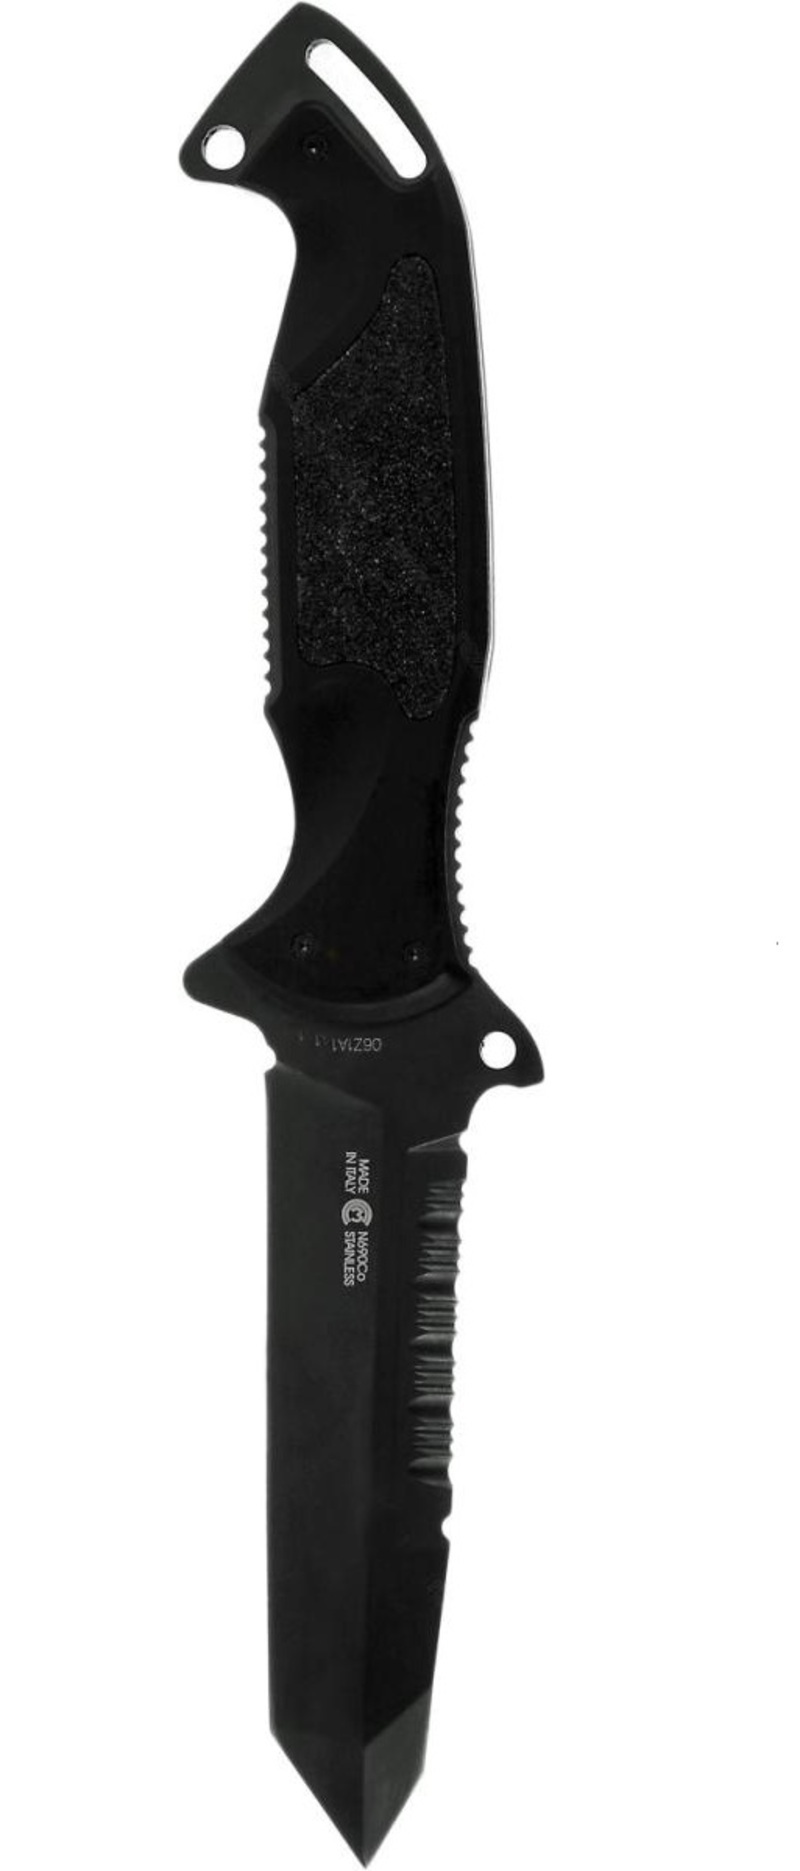 Нож с фиксированным клинком Remington Зулу I (Zulu) RM\895FT Tanto TF, сталь 440C Teflon, рукоять алюминий, черный от Ножиков